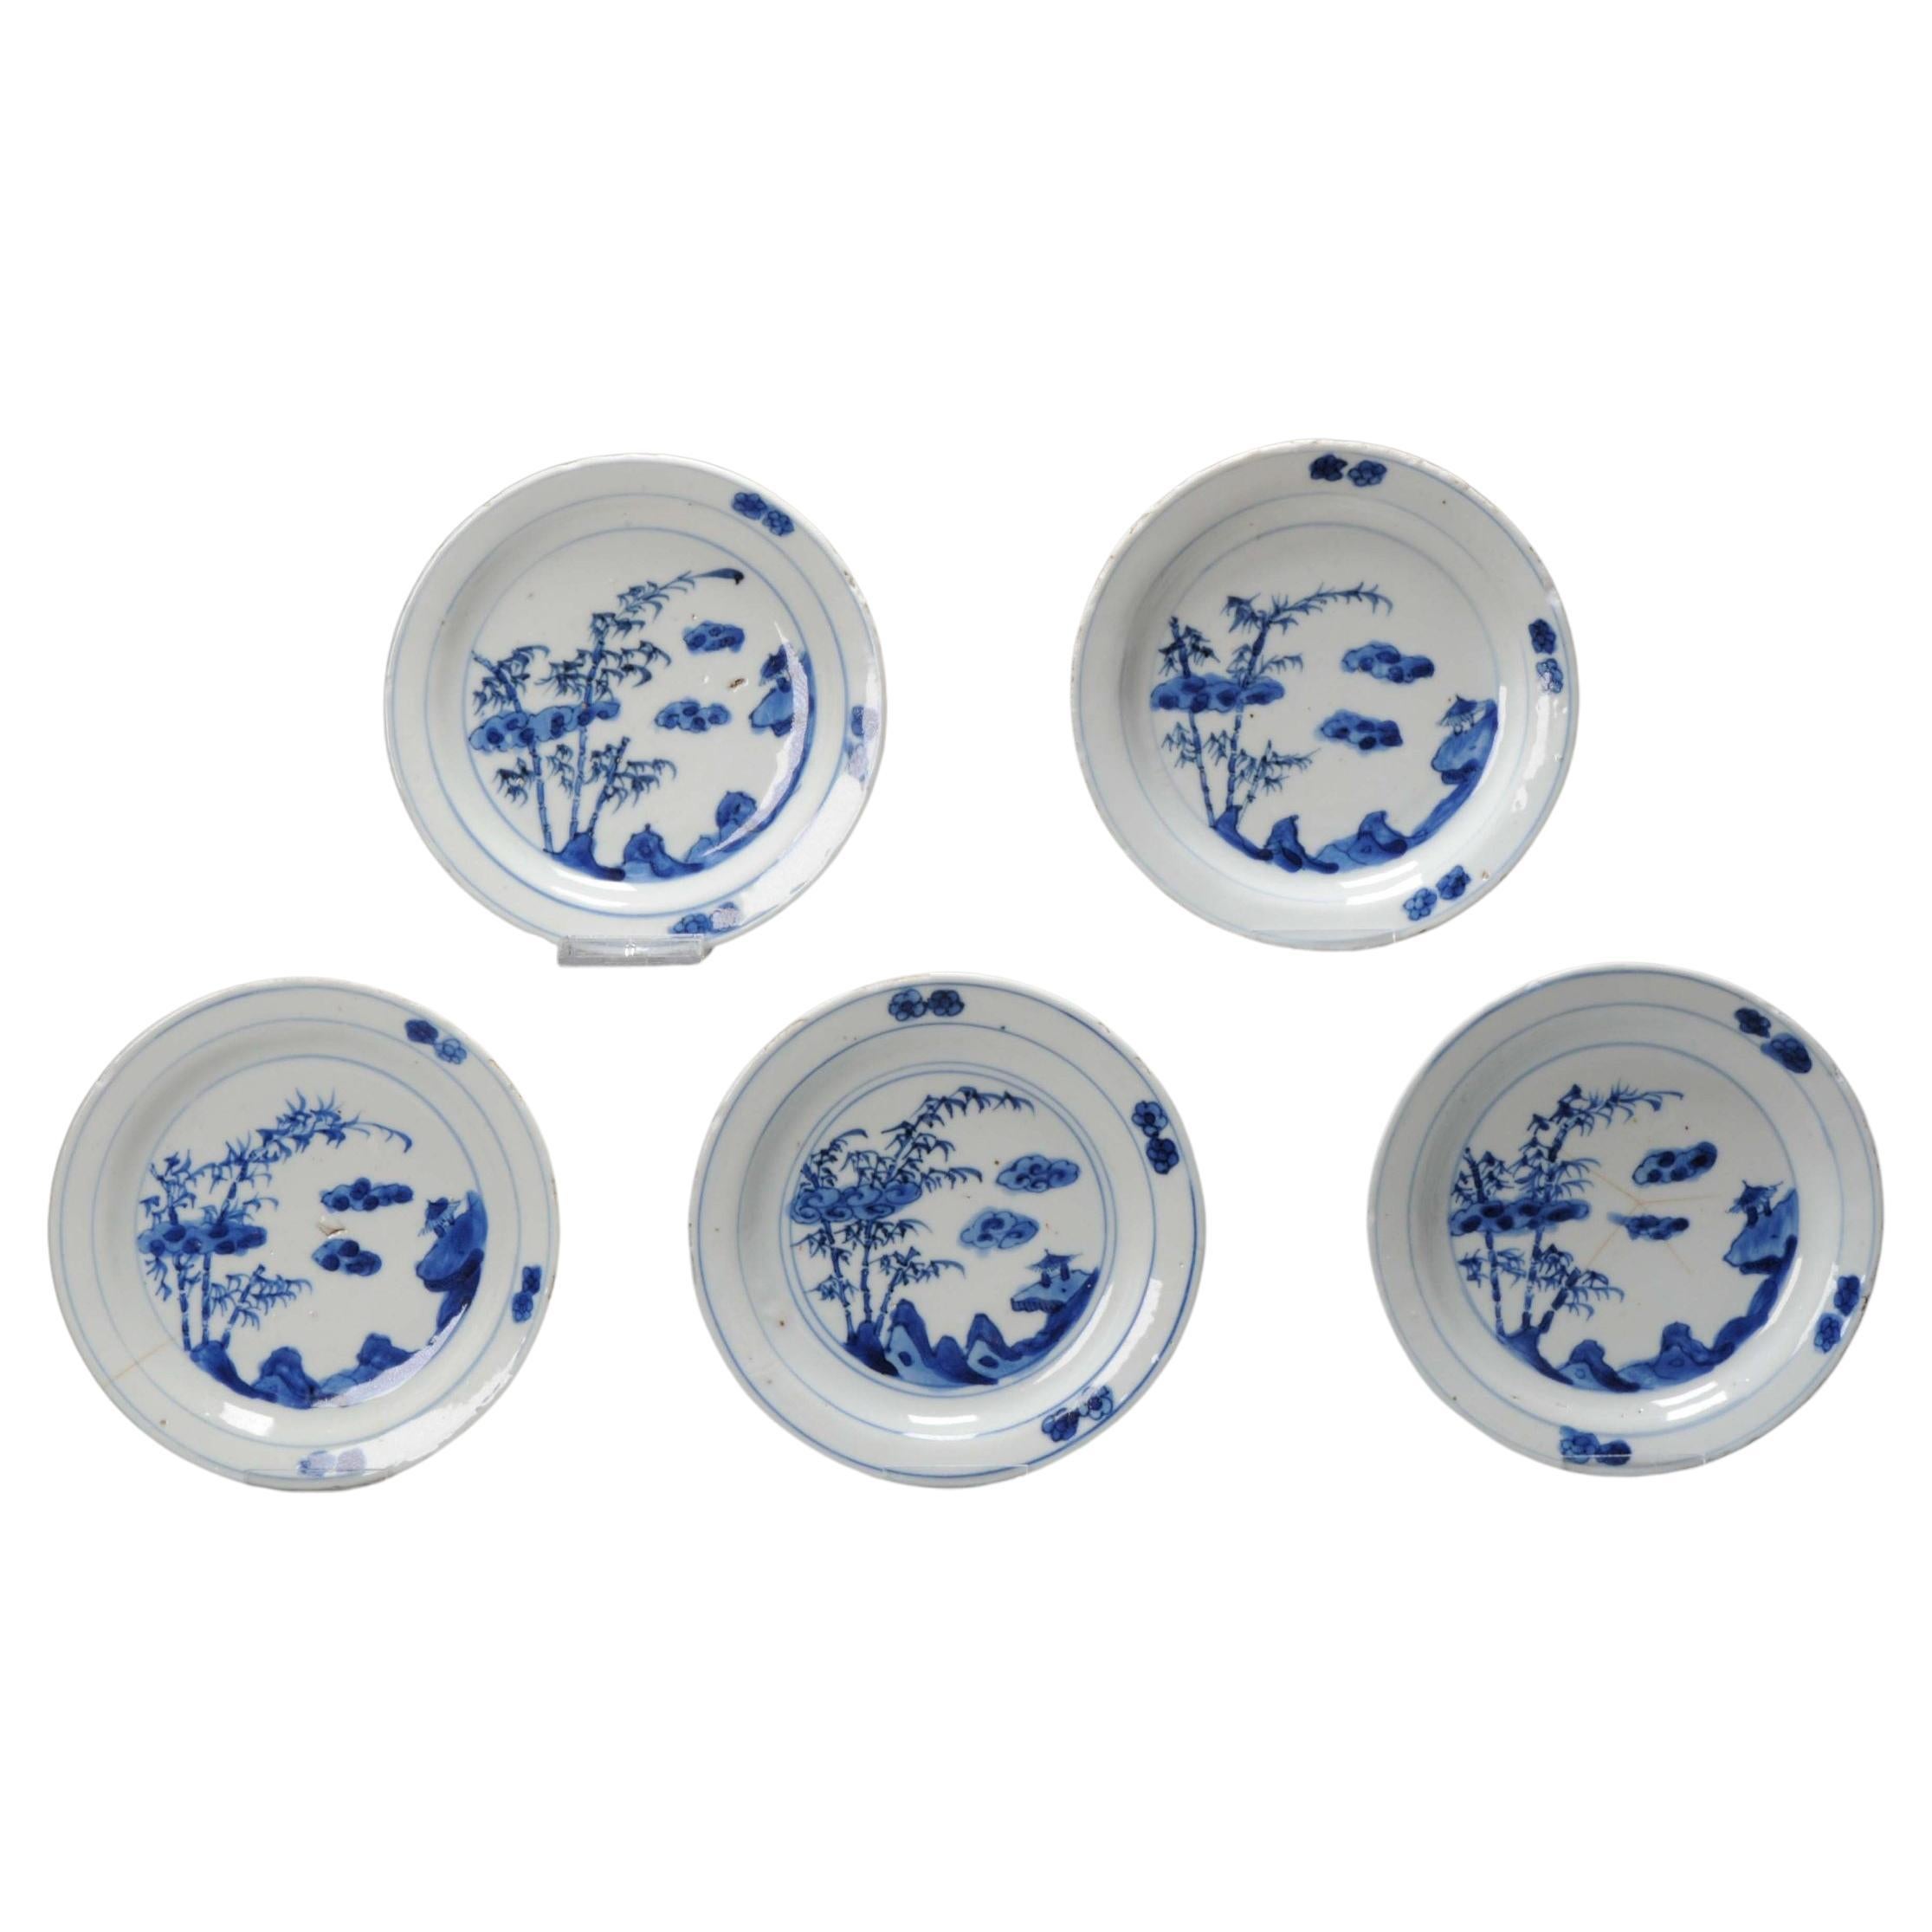 Kosometsuke set n°5 Assiettes anciennes chinoises en porcelaine de Chine de la dynastie Ming datant du 17e siècle